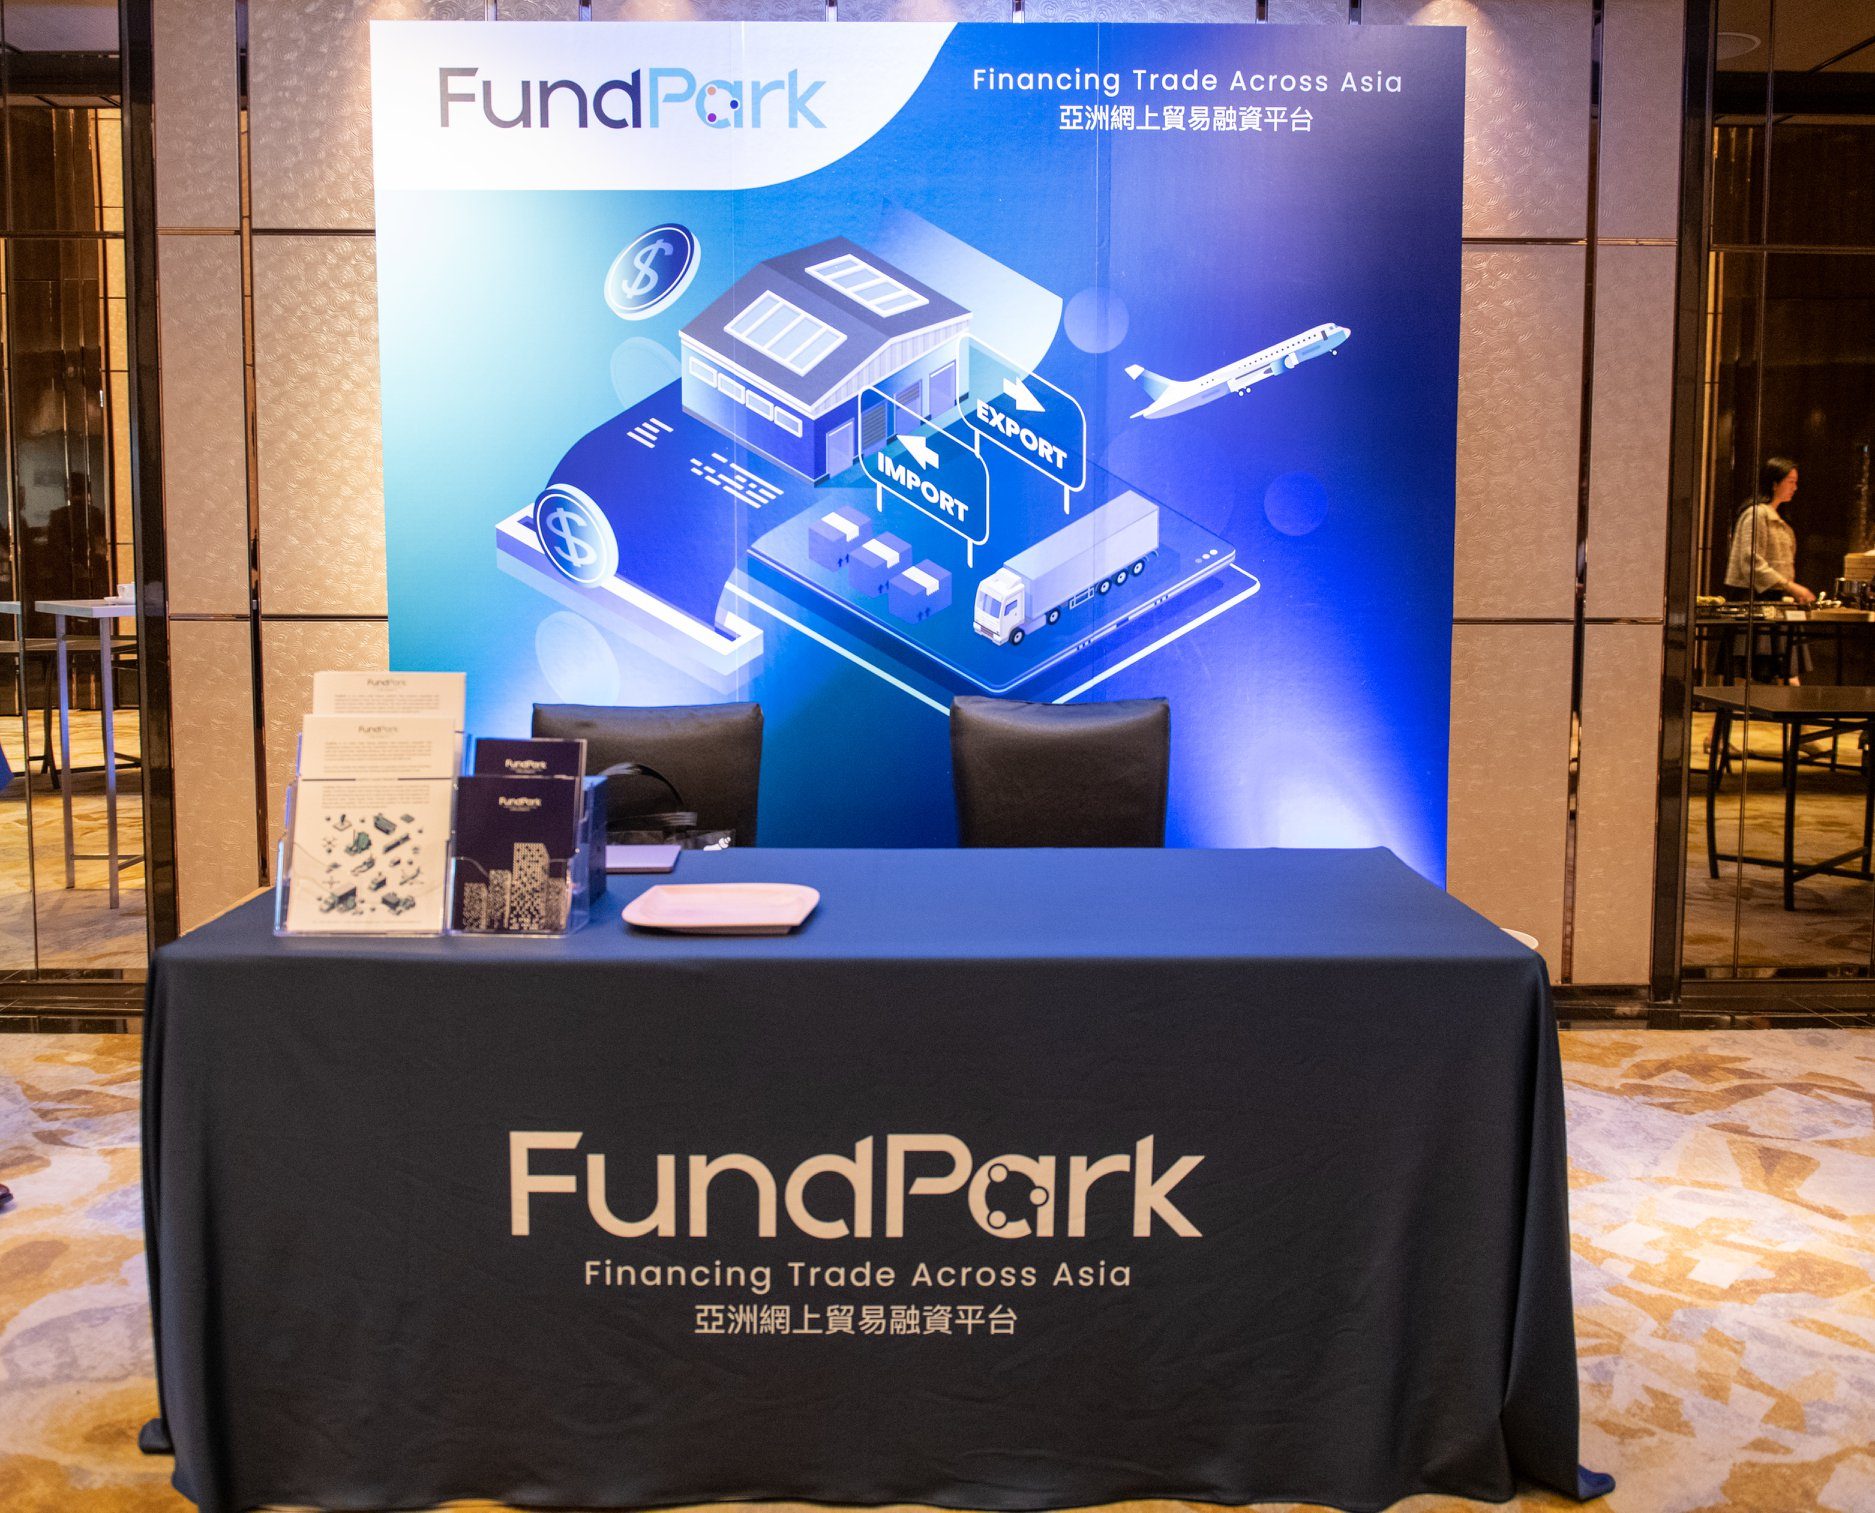 Hong Kong-based SME lender FundPark secures $250m debt facility